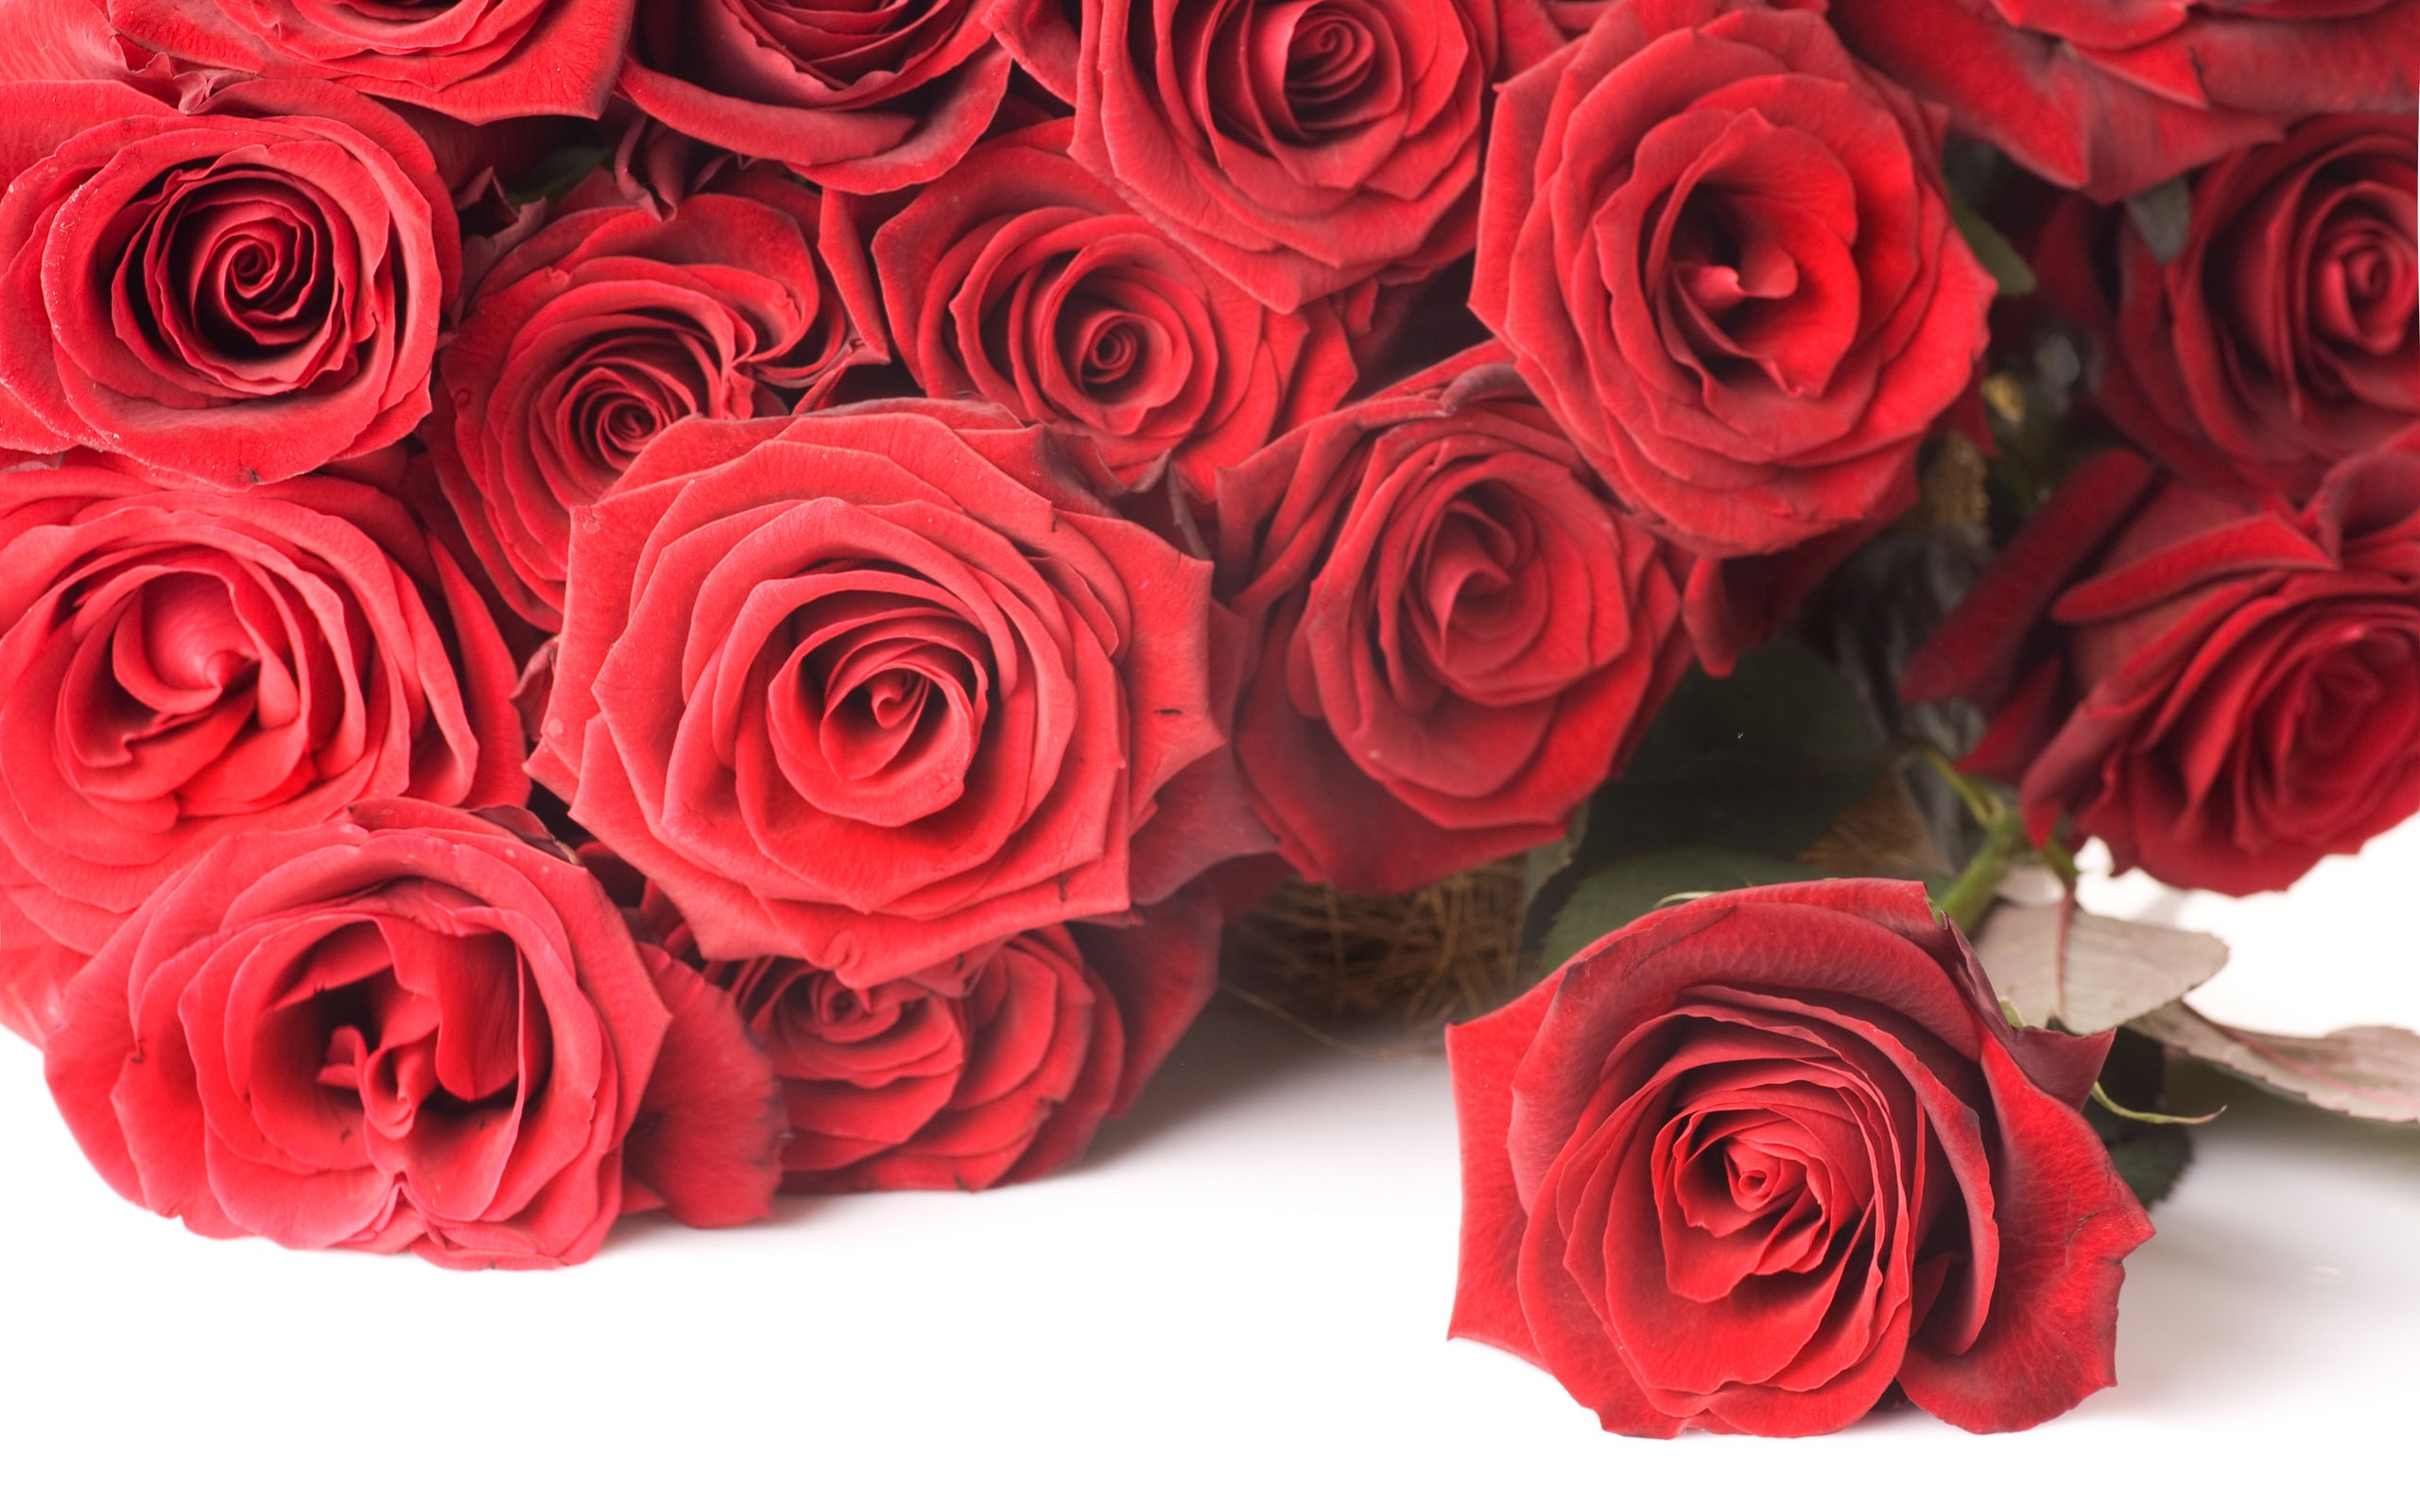 超大玫瑰写真 壁纸(二)6 - 2560x1600